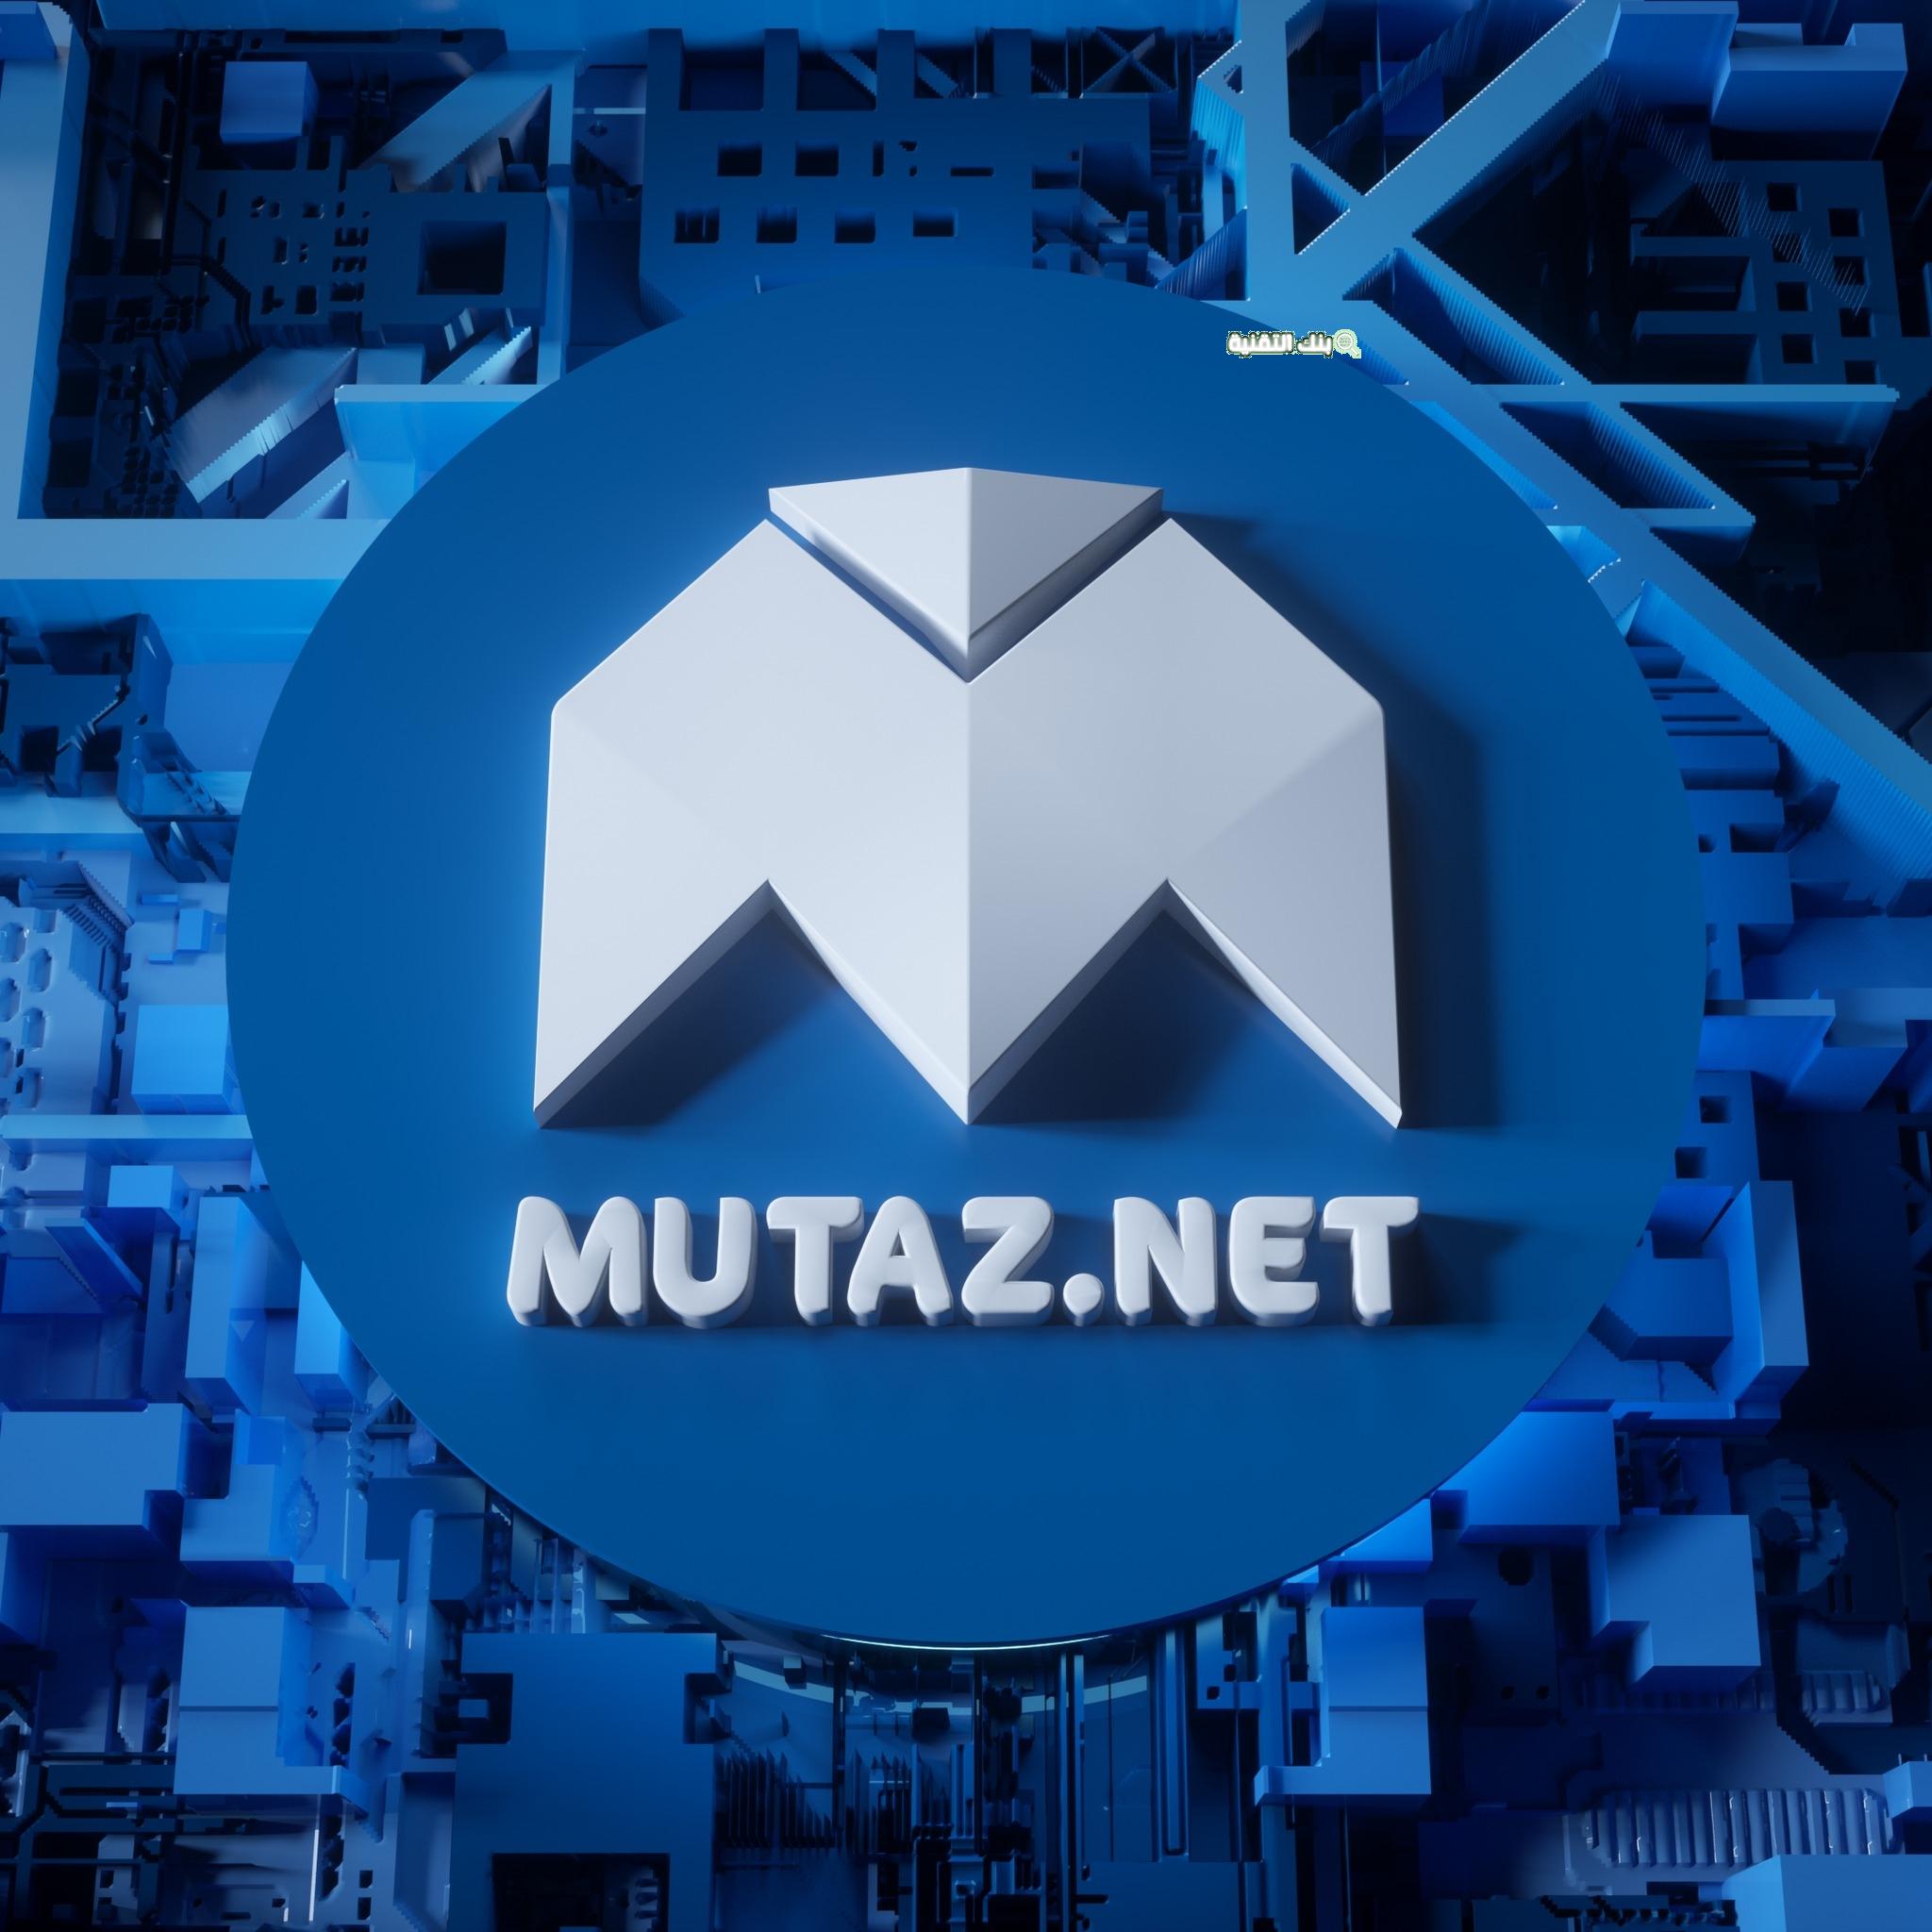 mutaz.net موقع معتز Mutaz.Net لتحميل جميع البرامج المجانية Mutaz.Net, موقع معتز, موقع معتز تحميل برامج مجانية